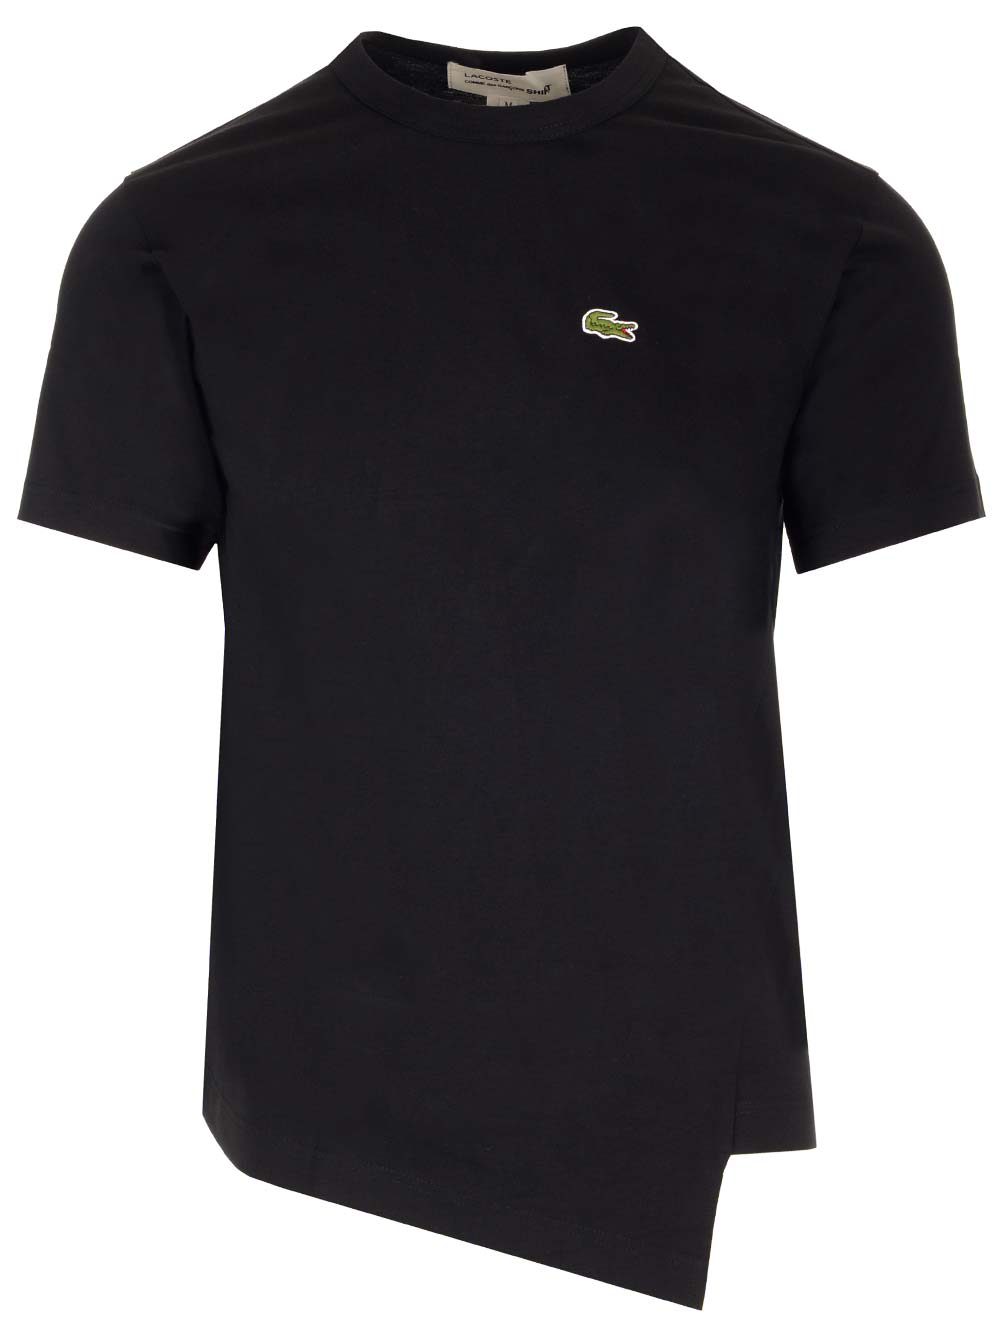 Black Asymmetric T-shirt X La Coste